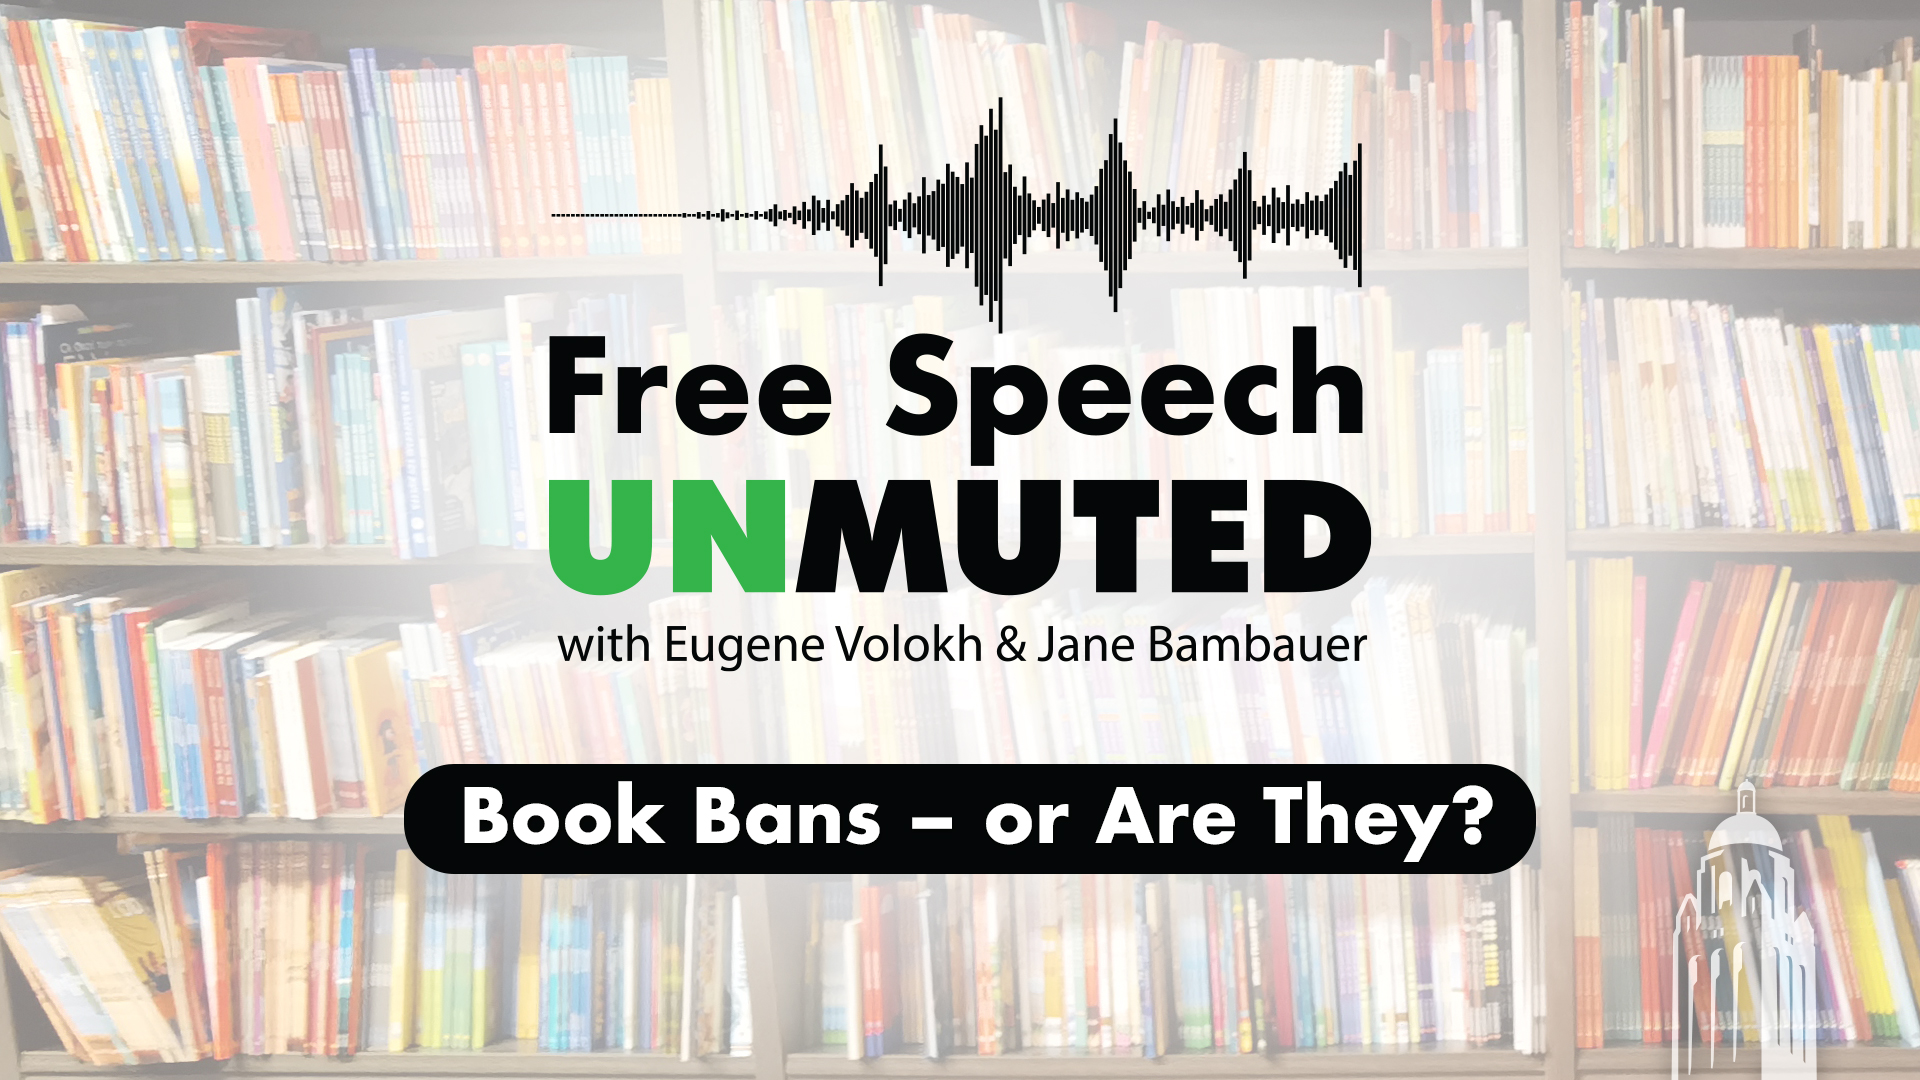 Free Speech Unmuted Episode 1